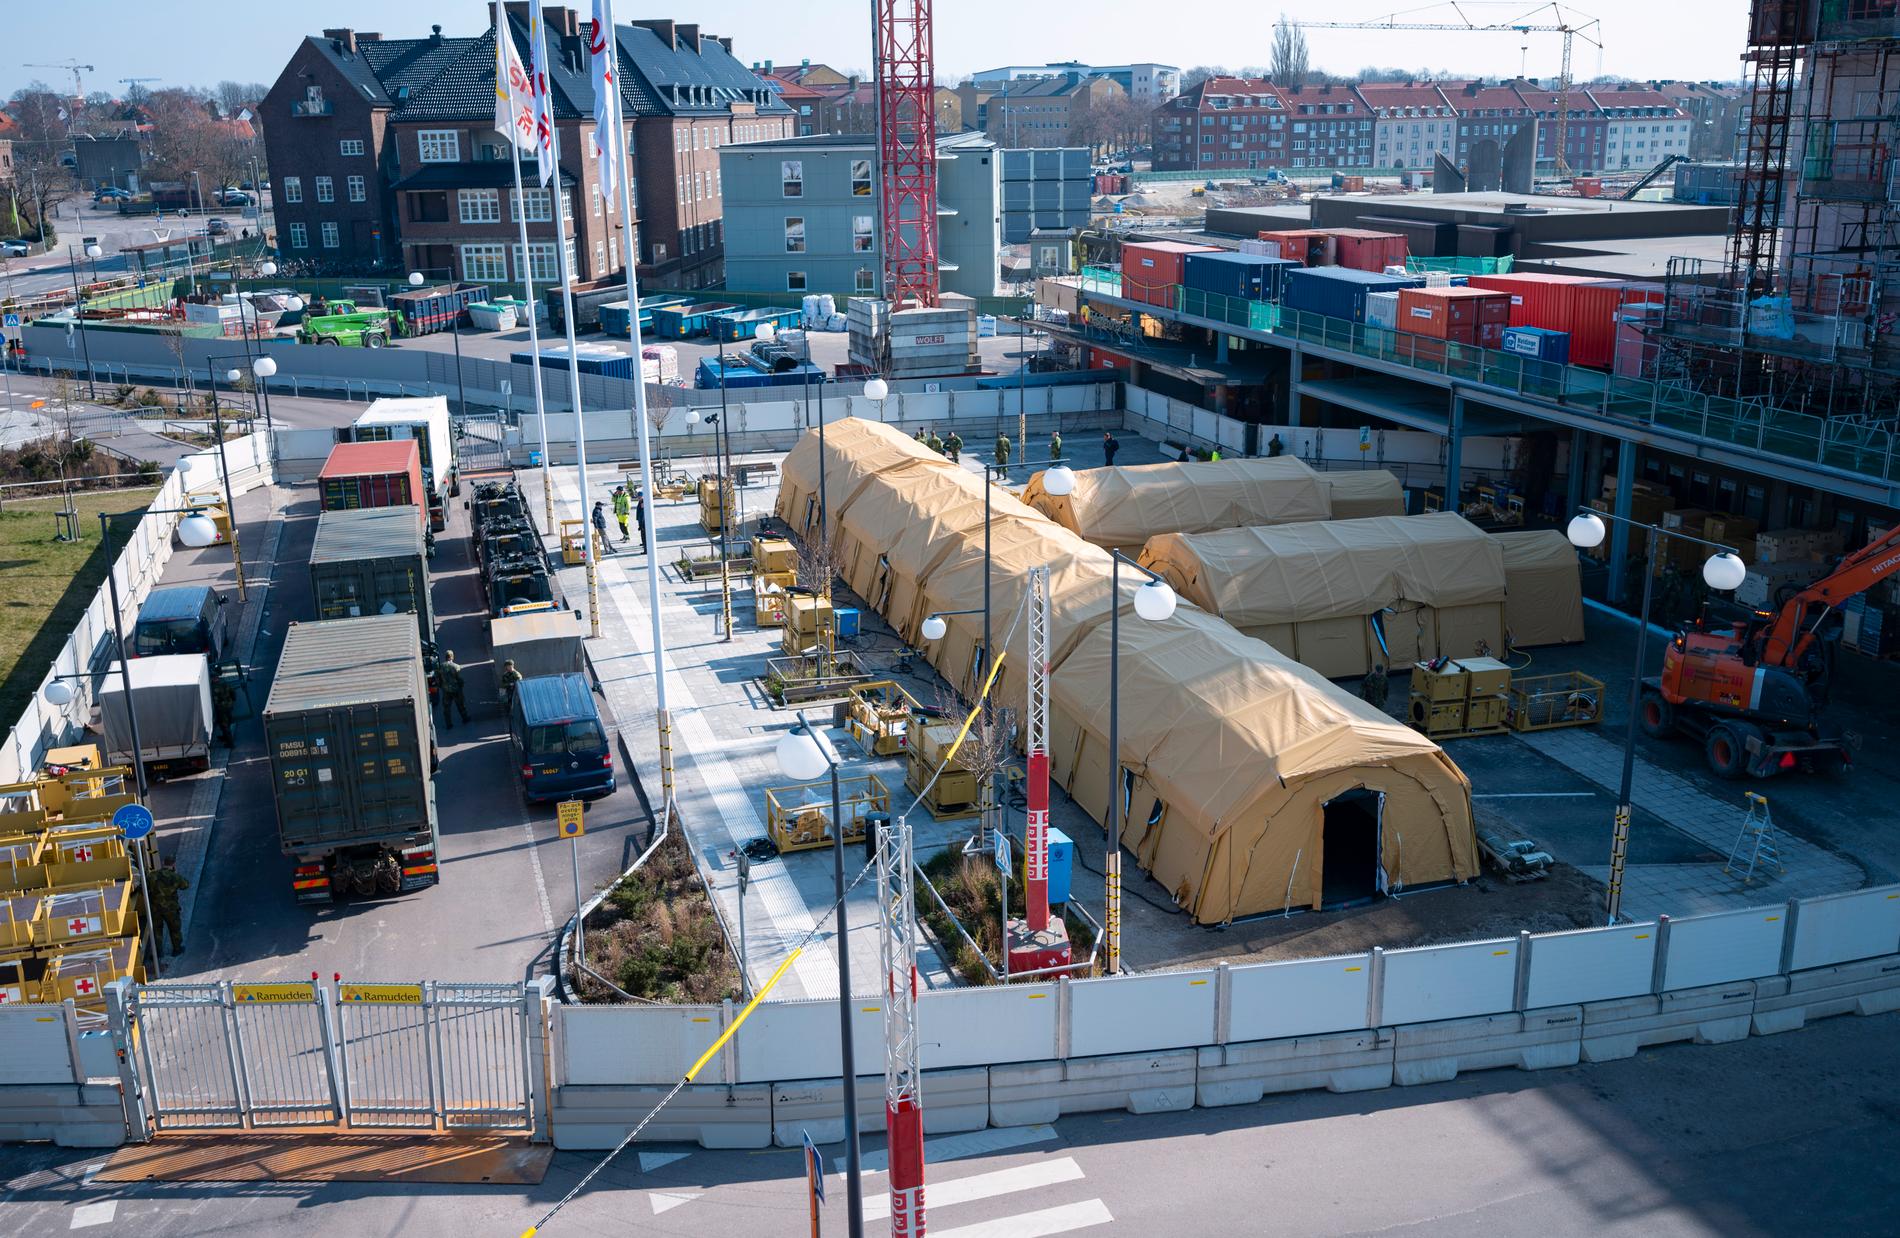 Tältsjukhuset utanför Lasarettet i Helsingborg på fredagen. Ett 50-tal militärer bygger upp det tillsammans med personal från Socialstyrelsen.